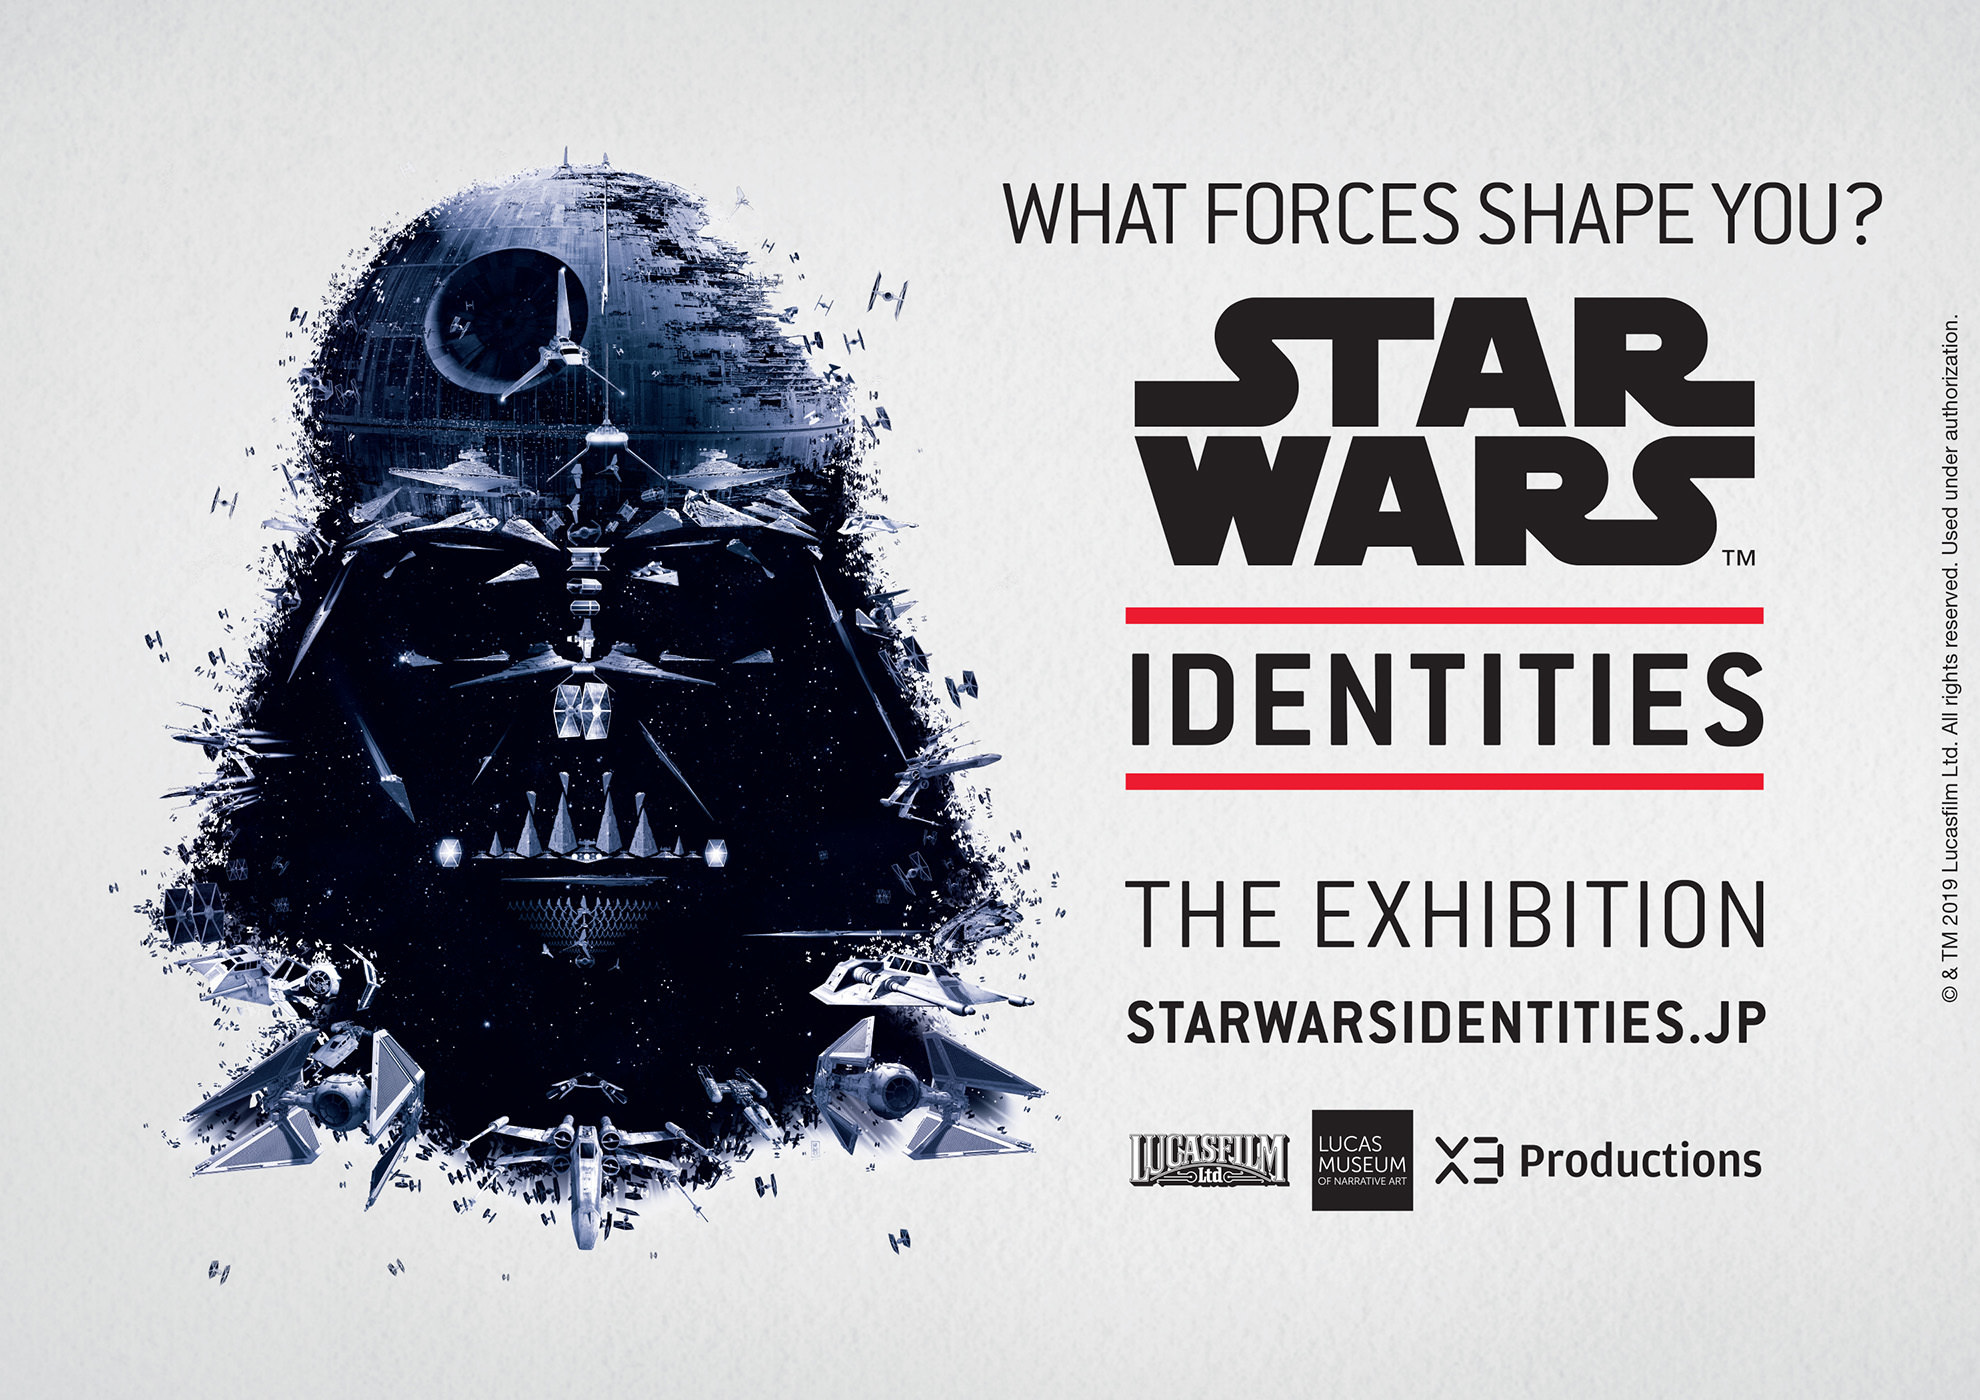 スター・ウォーズ(TM)の最後の大展覧会　
STAR WARS(TM) Identities： The Exhibition